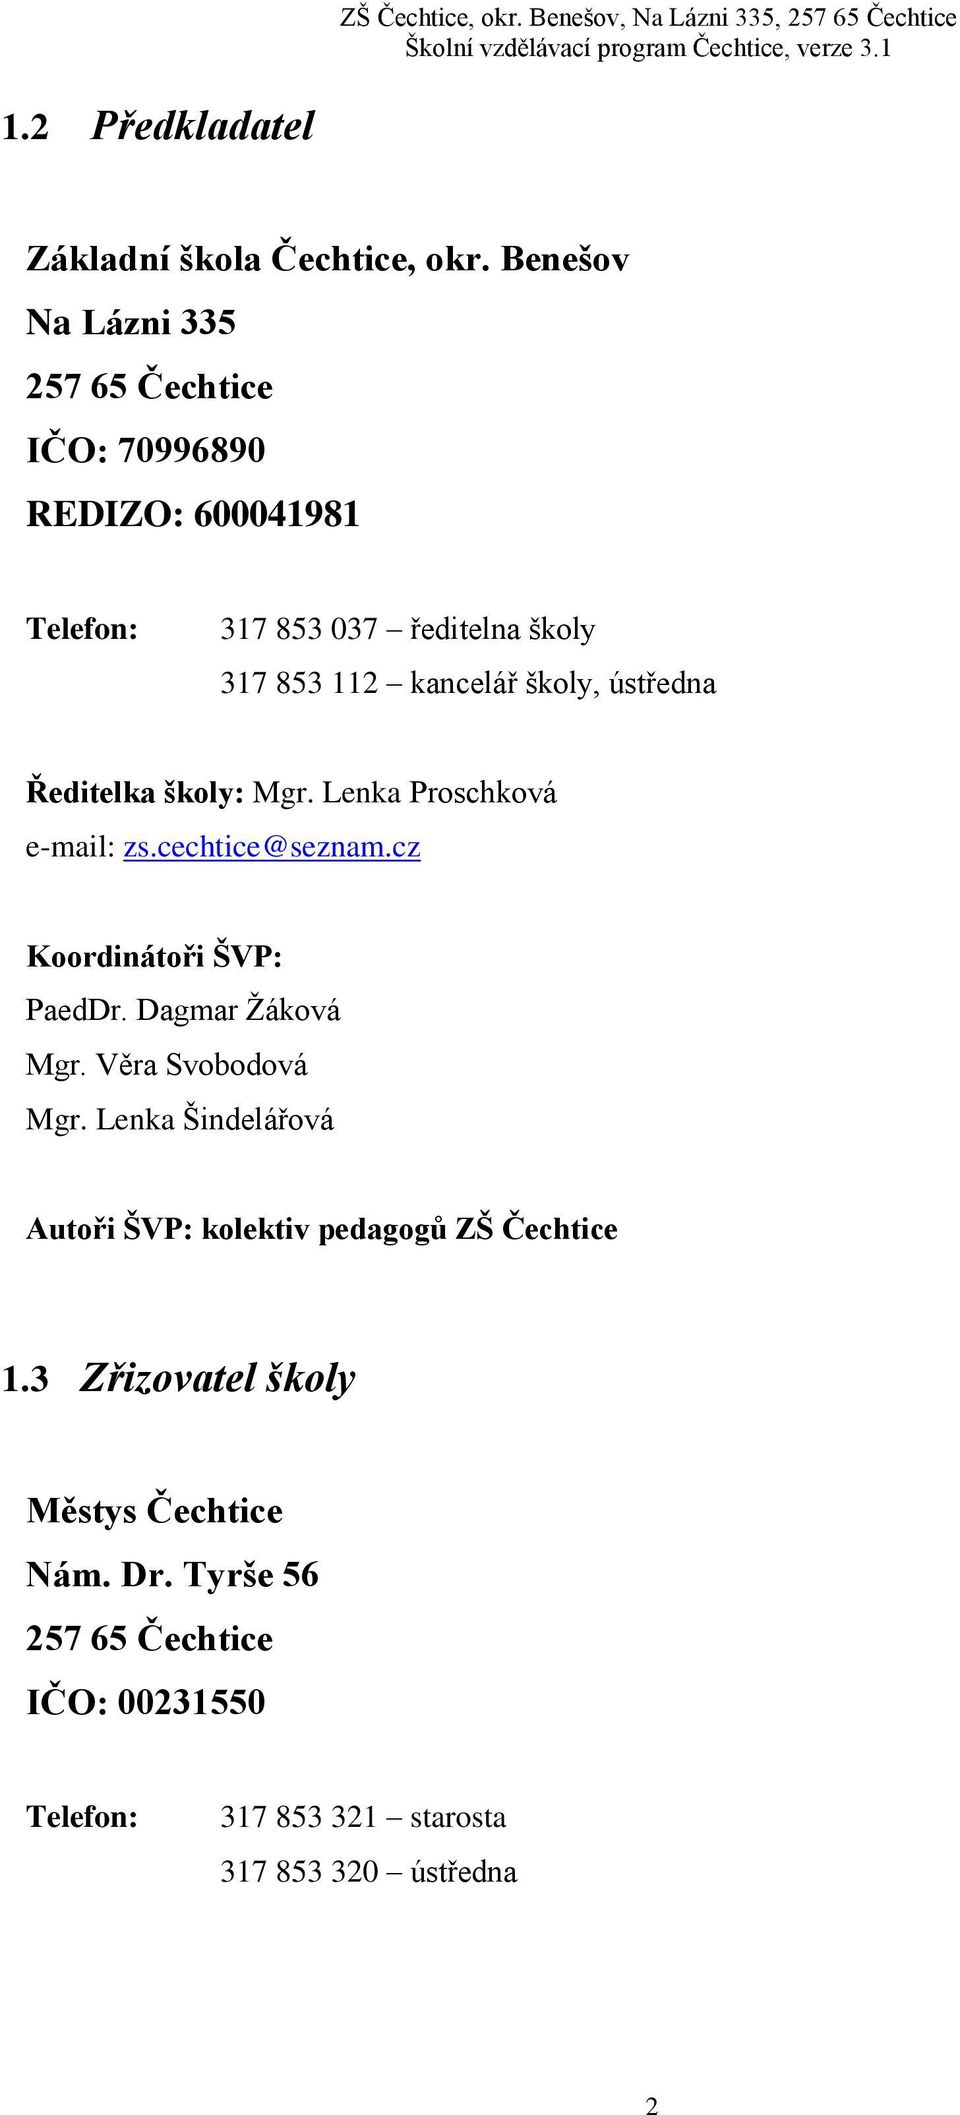 školy, ústředna Ředitelka školy: Mgr. Lenka Proschková e-mail: zs.cechtice@seznam.cz Koordinátoři ŠVP: PaedDr. Dagmar Žáková Mgr.